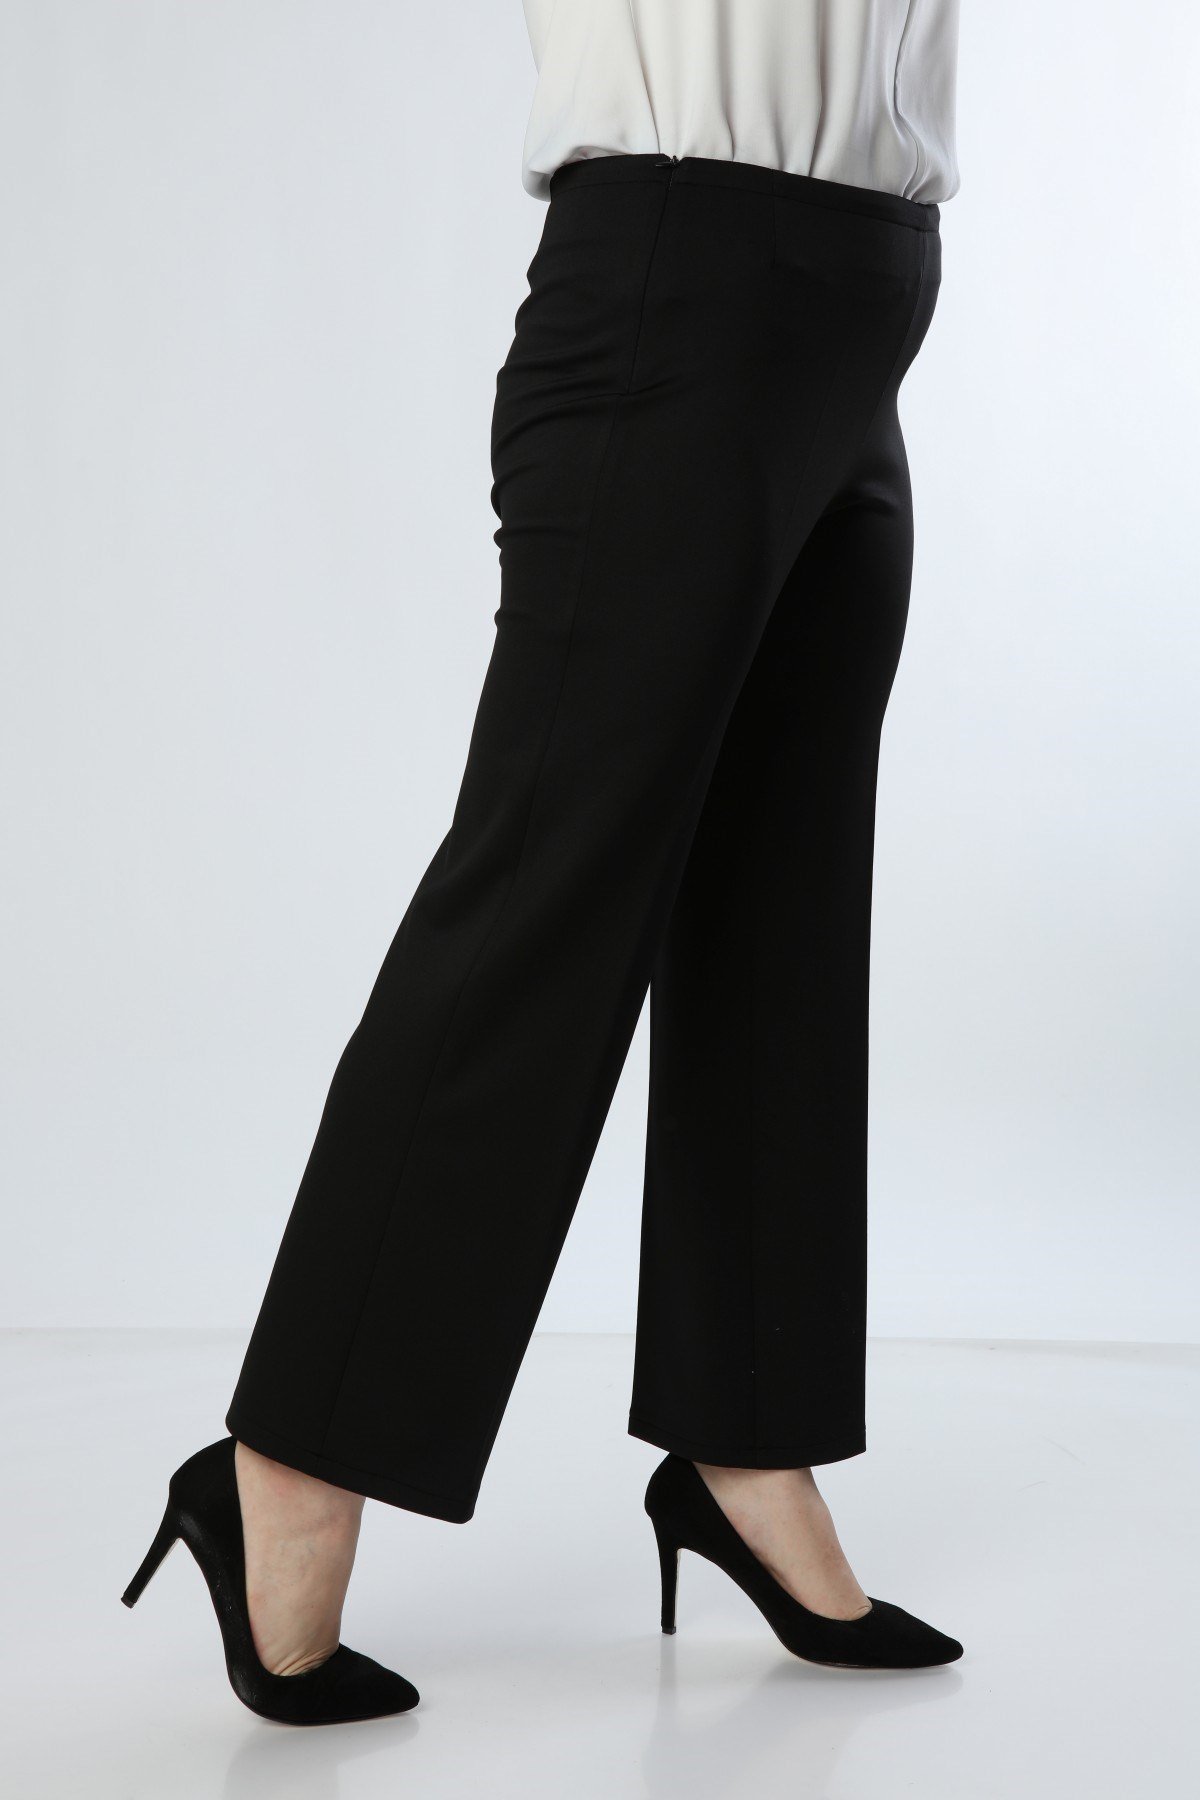 Büyük Beden Boru Paça Siyah Pantolon - Büyük Beden Pantolon Modelleri